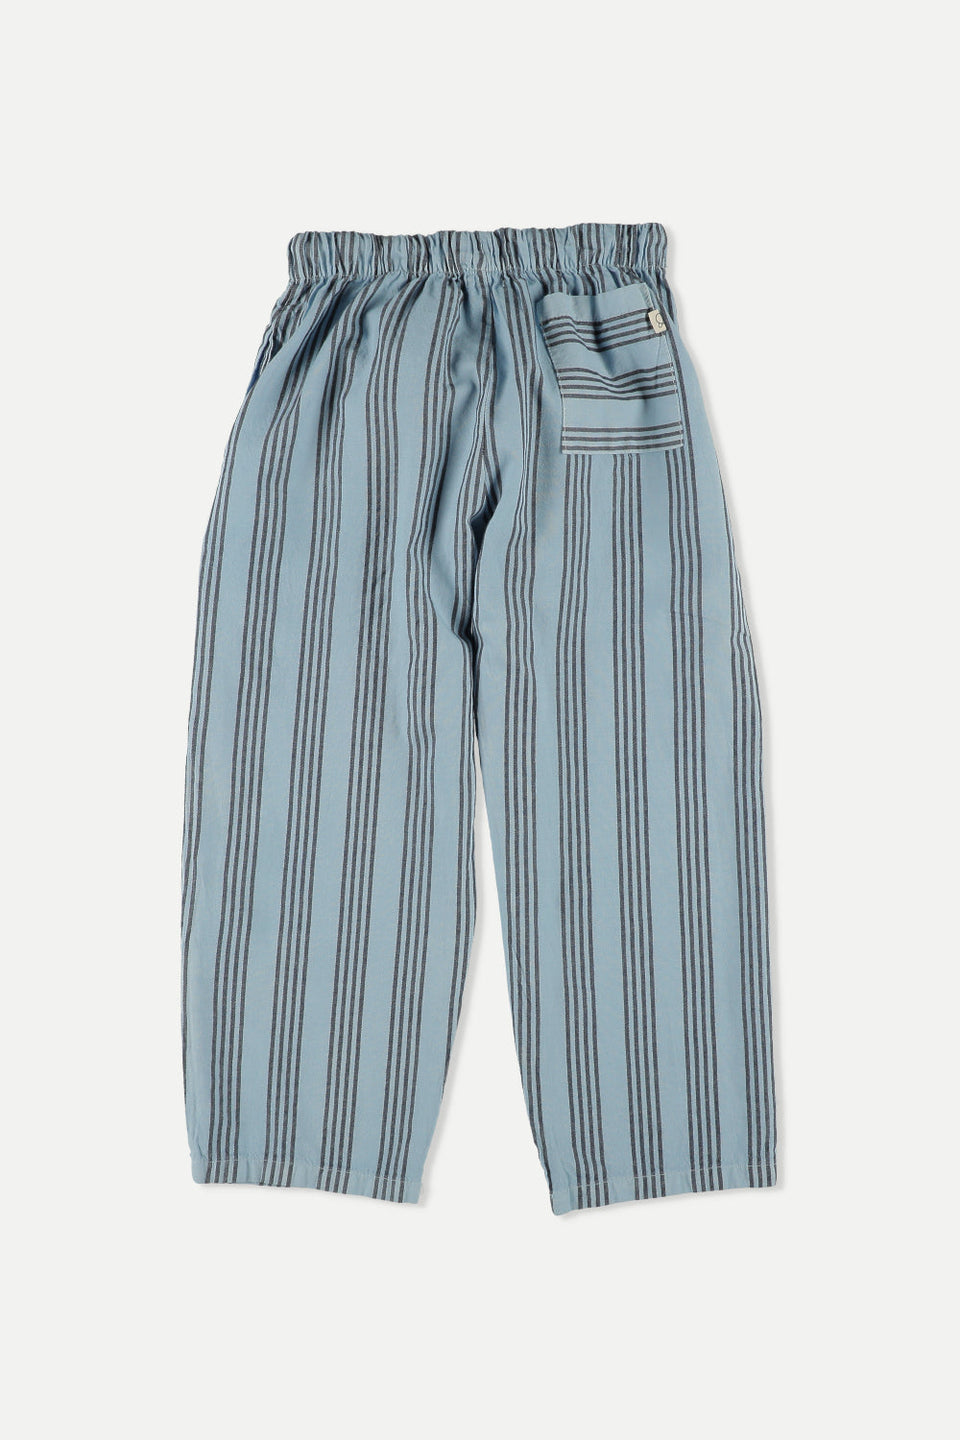 Blue Vintage Stripes Pants (model shown in Ivory)